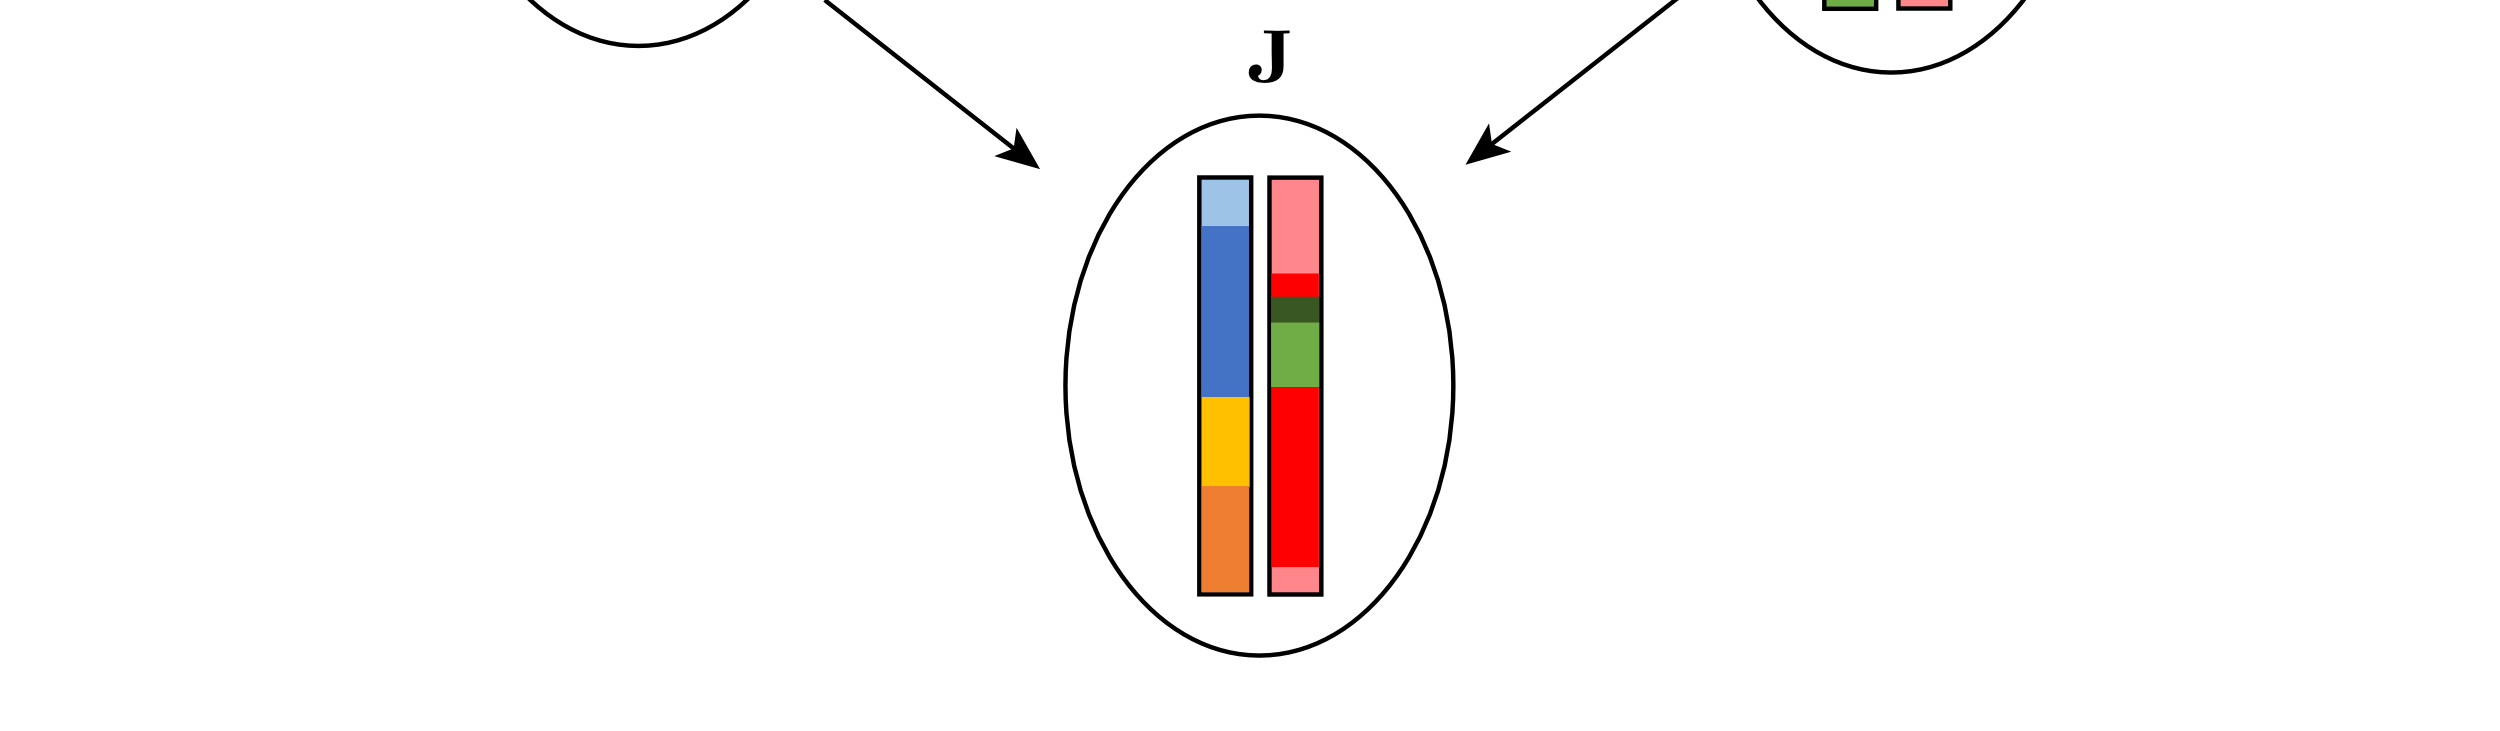 Vastaavasti uudelleenjärjestelyn tuloksena jälkeläinen J perii vanhemmalta V genomin, jossa on pätkiä kaikista neljästä isovanhempien I1 ja I2 genomista. 